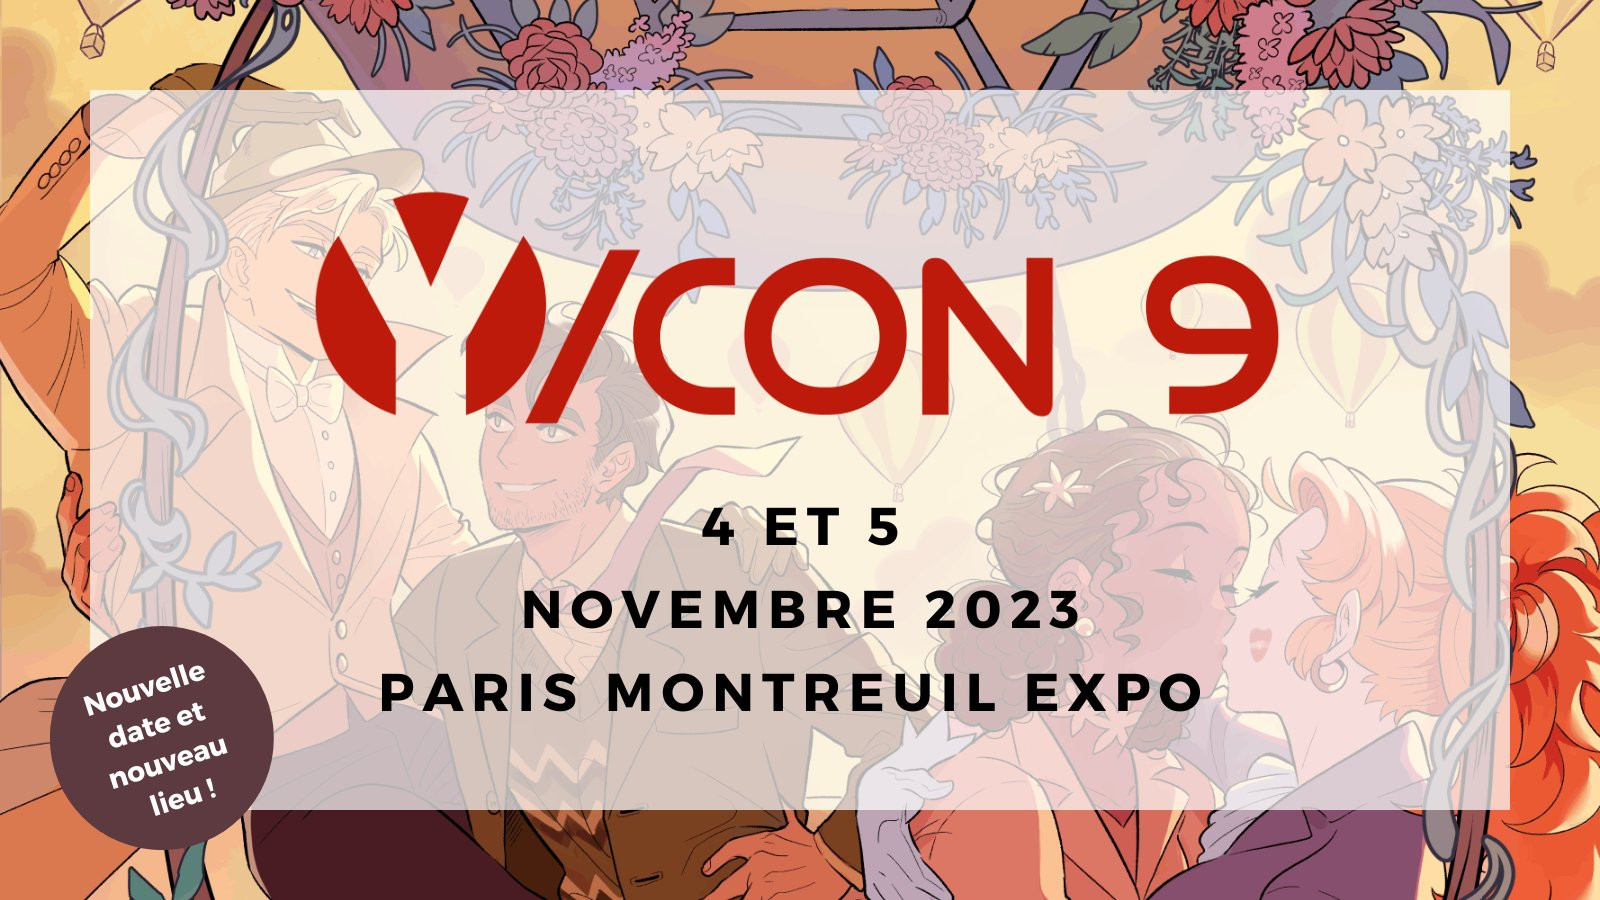 Affiche promotionnelle de Y/CON 9e édition à Paris Montreuil Expo